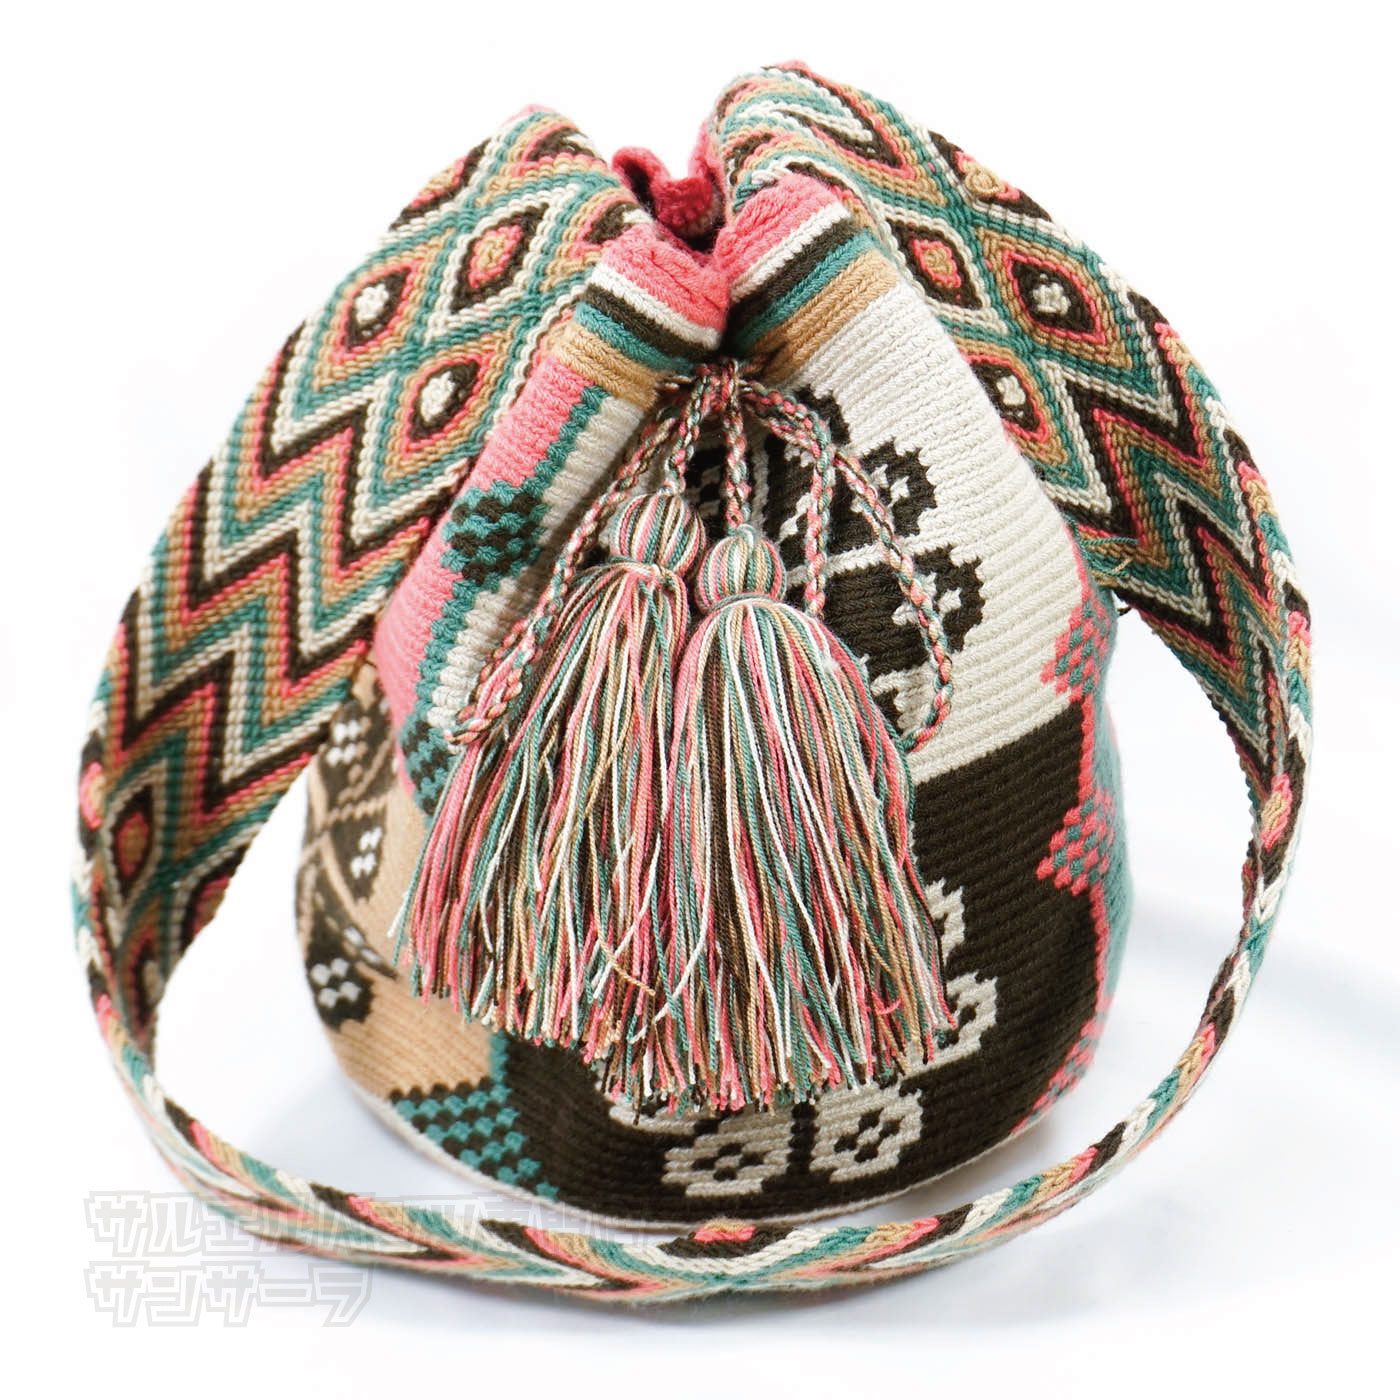 ワユーバッグ wayuu bag マザーズバッグ ショルダーバッグ レディース かごバッグ きれいめ ハンドメイド 手織り 南米 コロンビア 伝統 総柄 民族柄 エスニック ファッション プレゼントパターン1